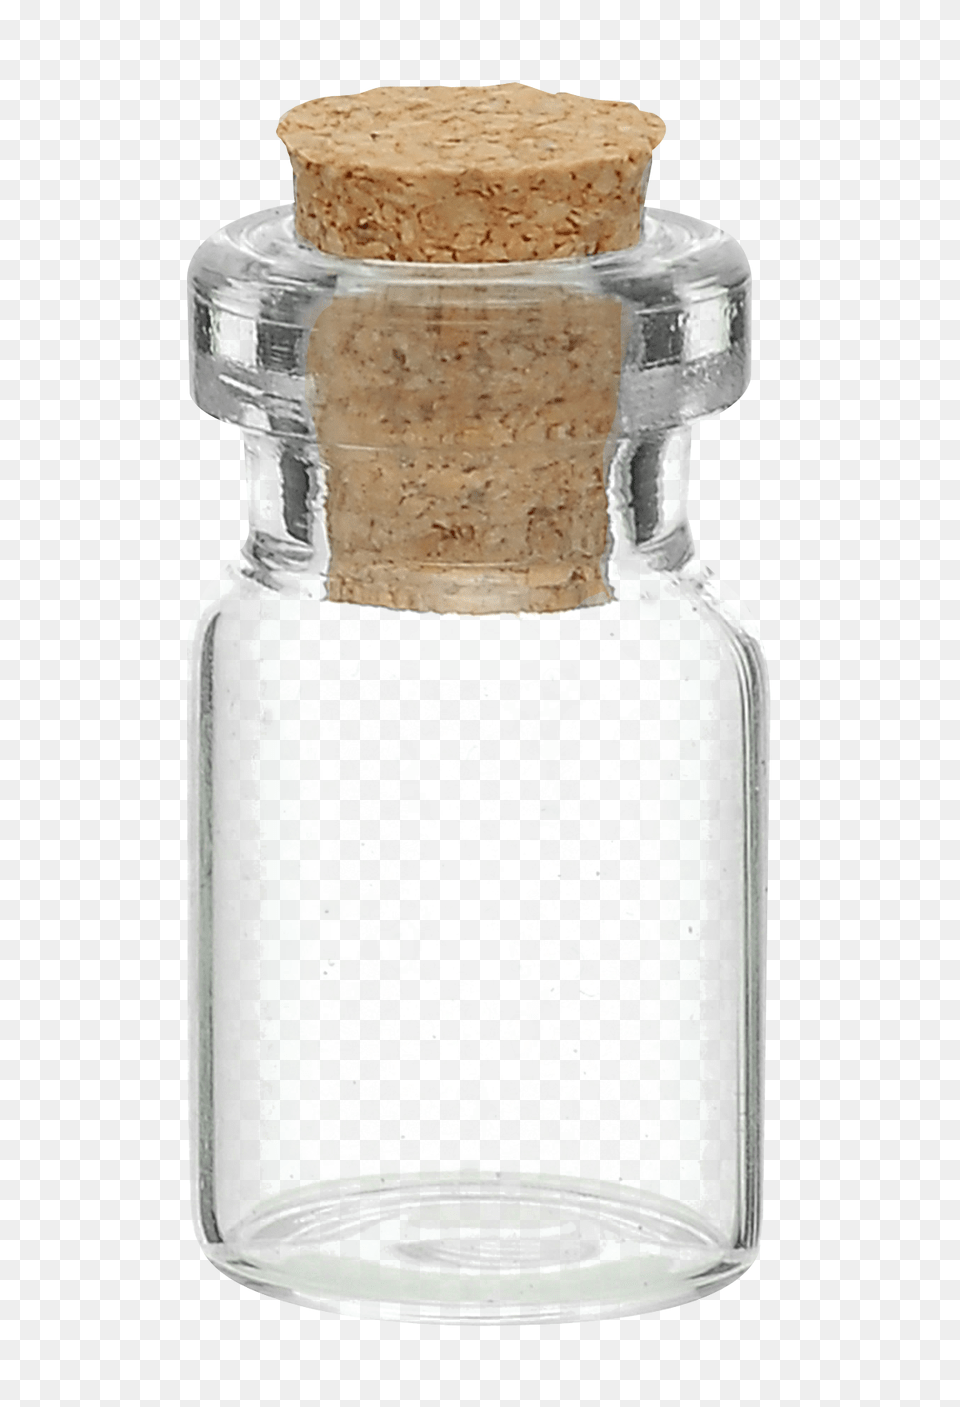 Pngpix Com Glass Jar Bottle, Cork, Shaker Free Transparent Png